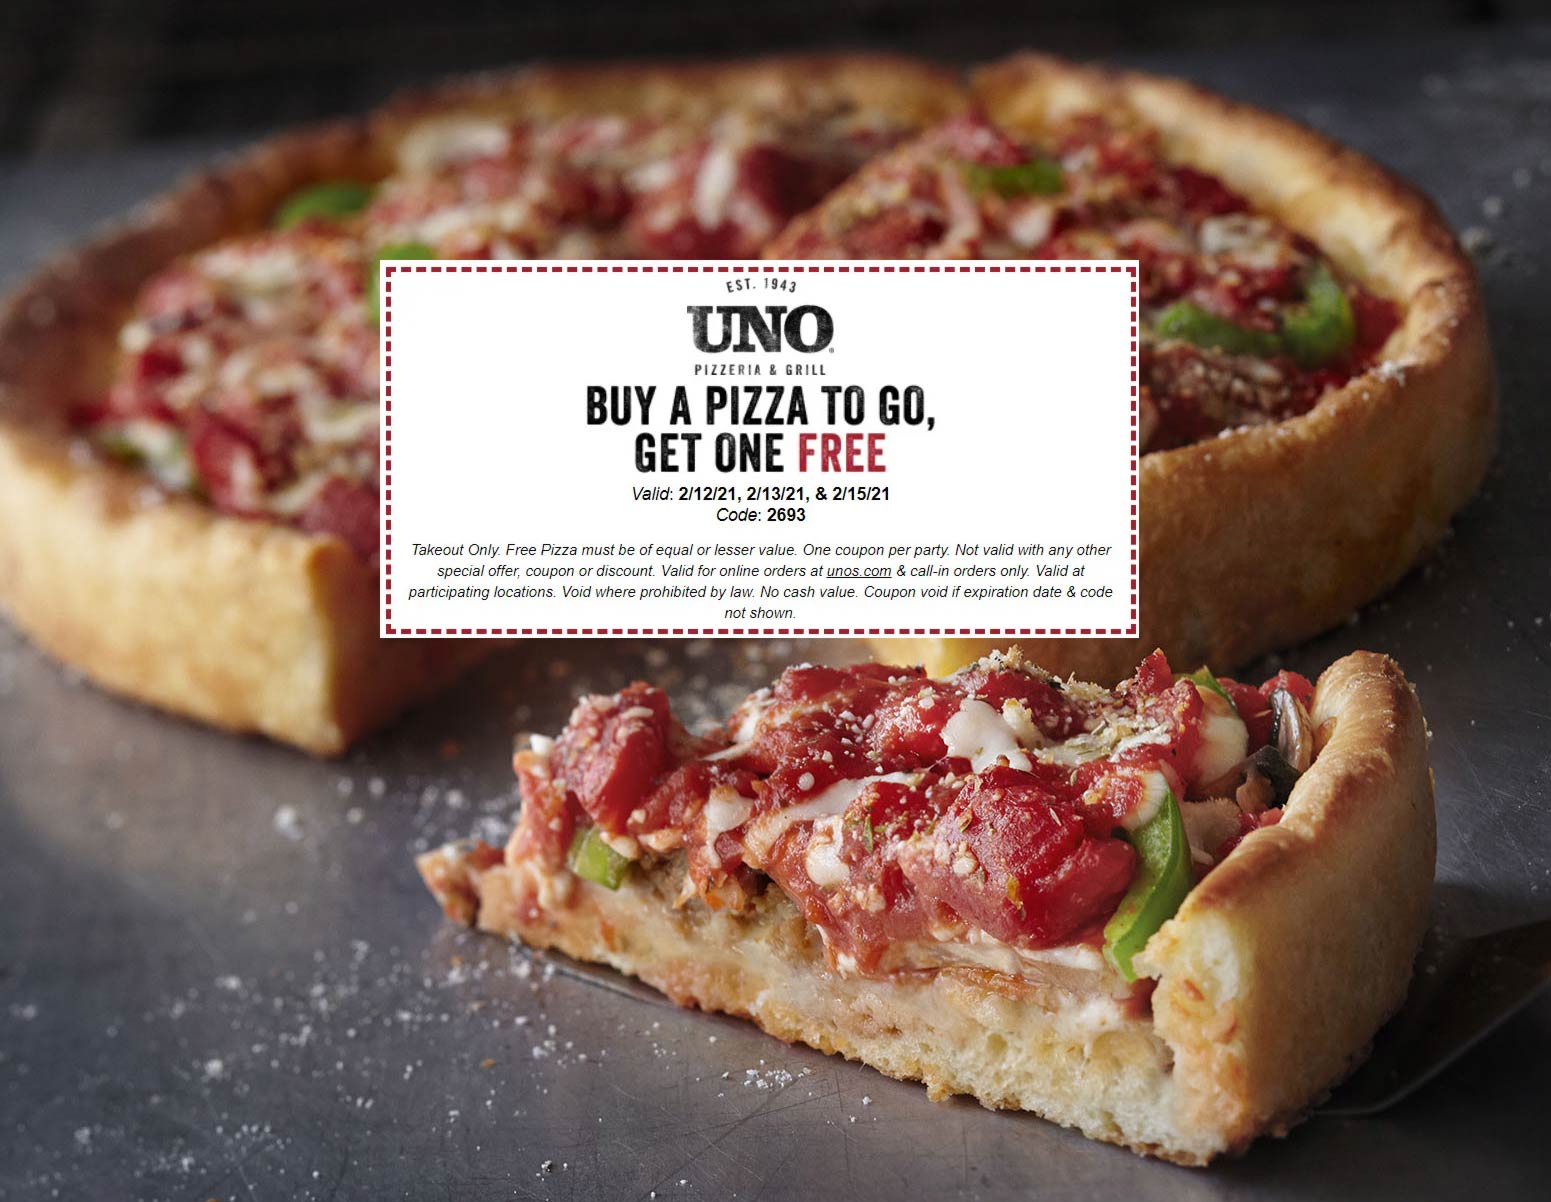 Uno Pizzeria restaurants Coupon  Second pizza free at Uno Pizzeria & grill #unopizzeria 